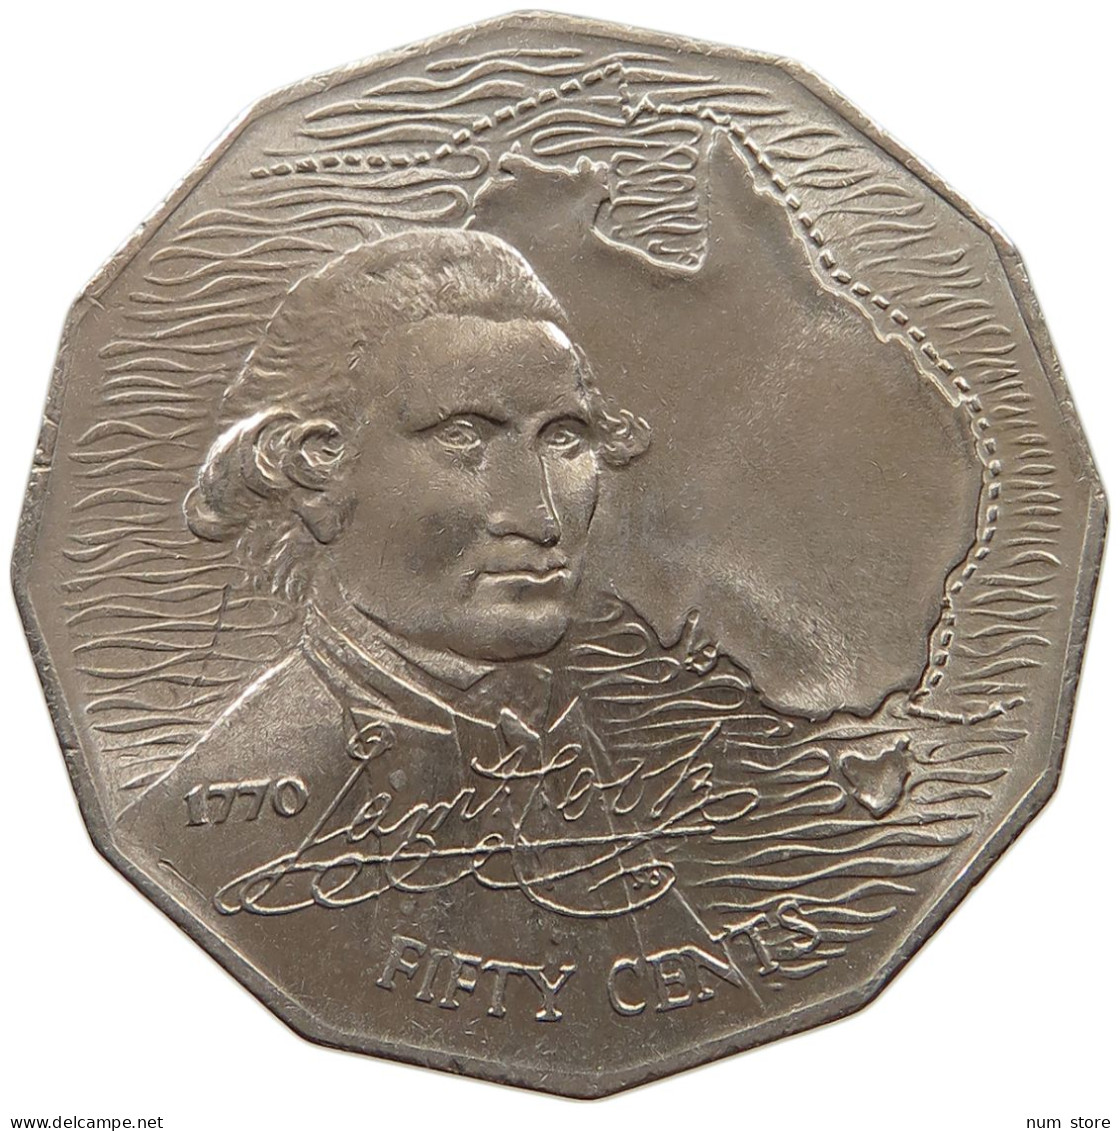 AUSTRALIA 50 CENTS 1970 #a079 0055 - 50 Cents